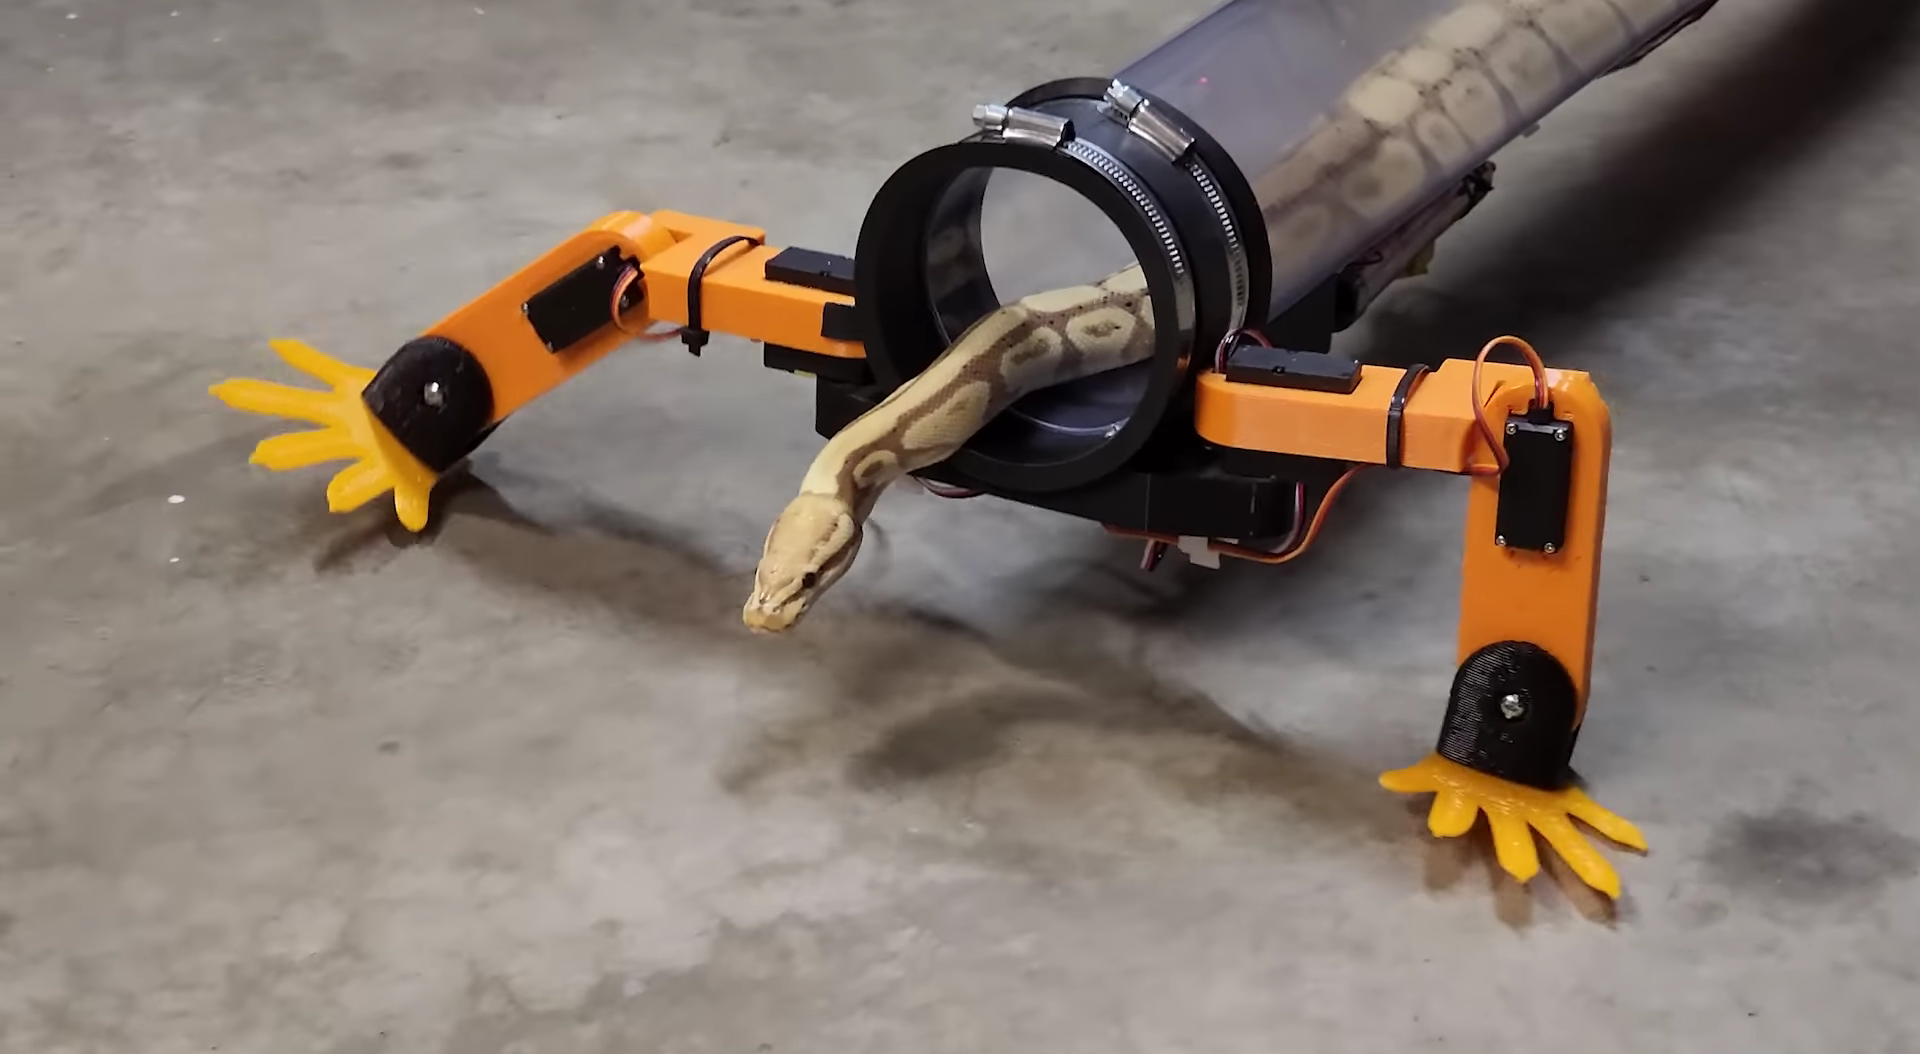 L'ingegnere sviluppa gambe robotiche per il serpente - lo adora